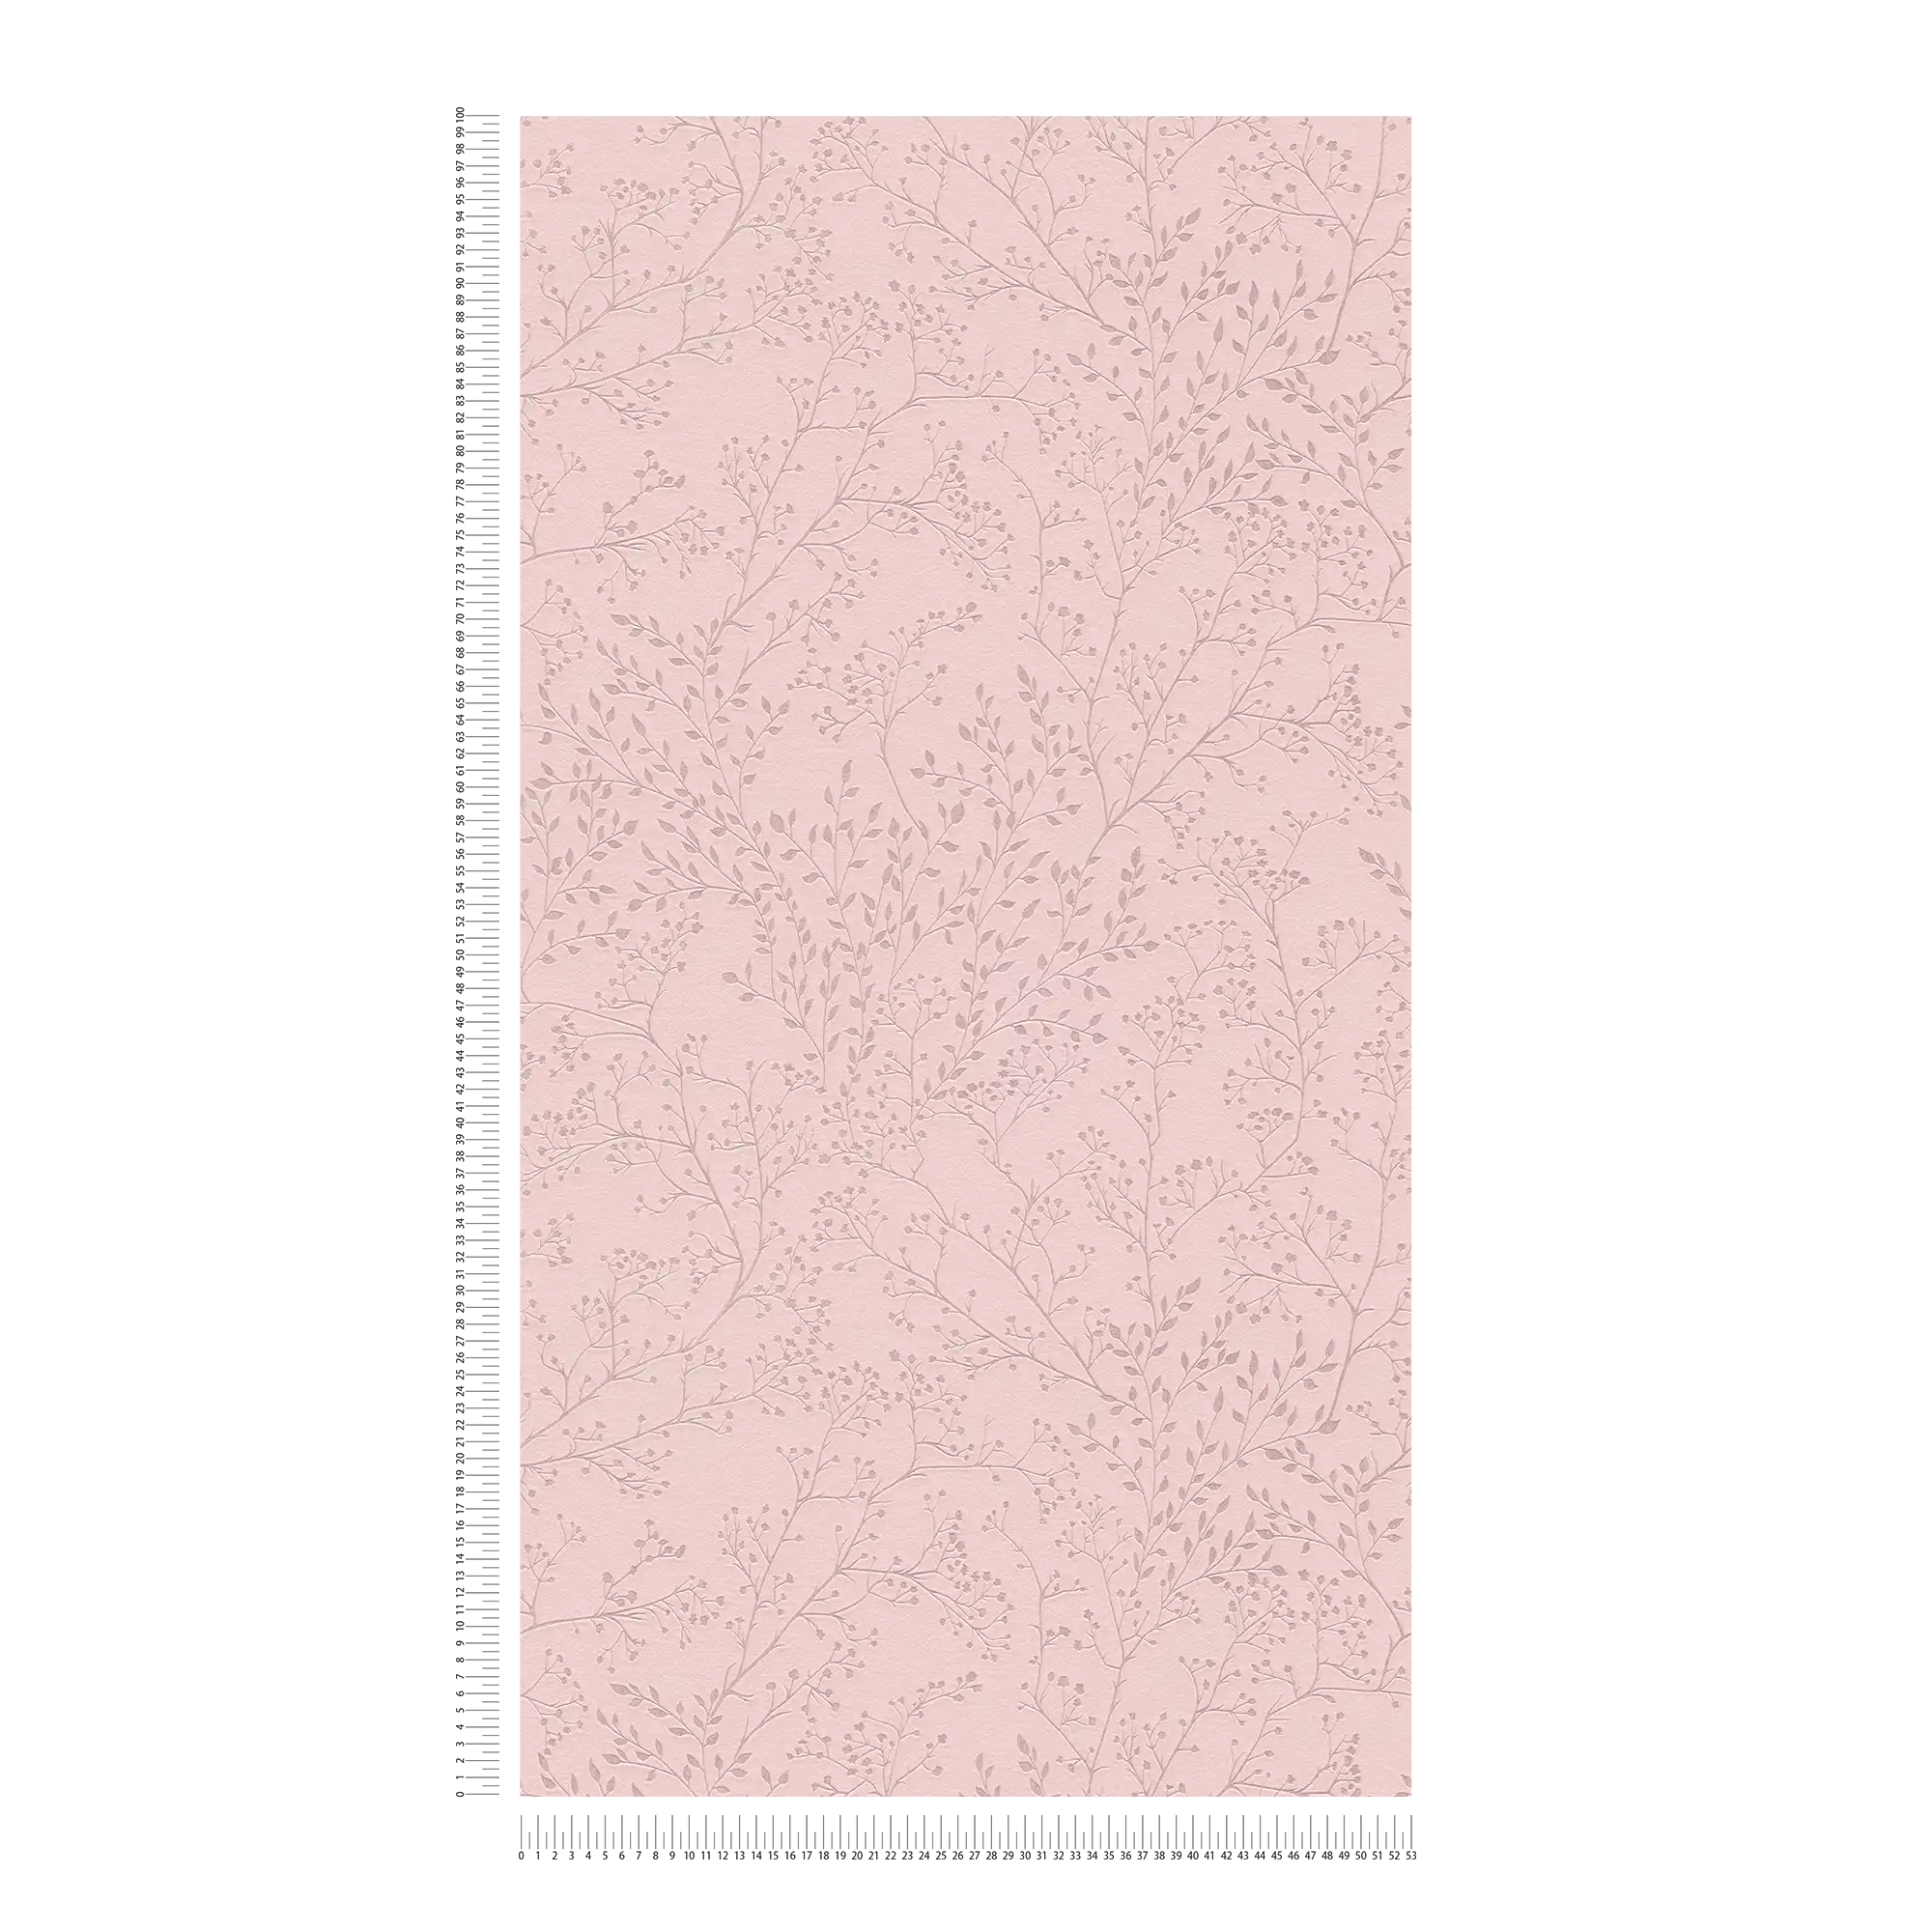             Papel pintado rosa liso con estampado de hojas, efecto brillo y textura
        